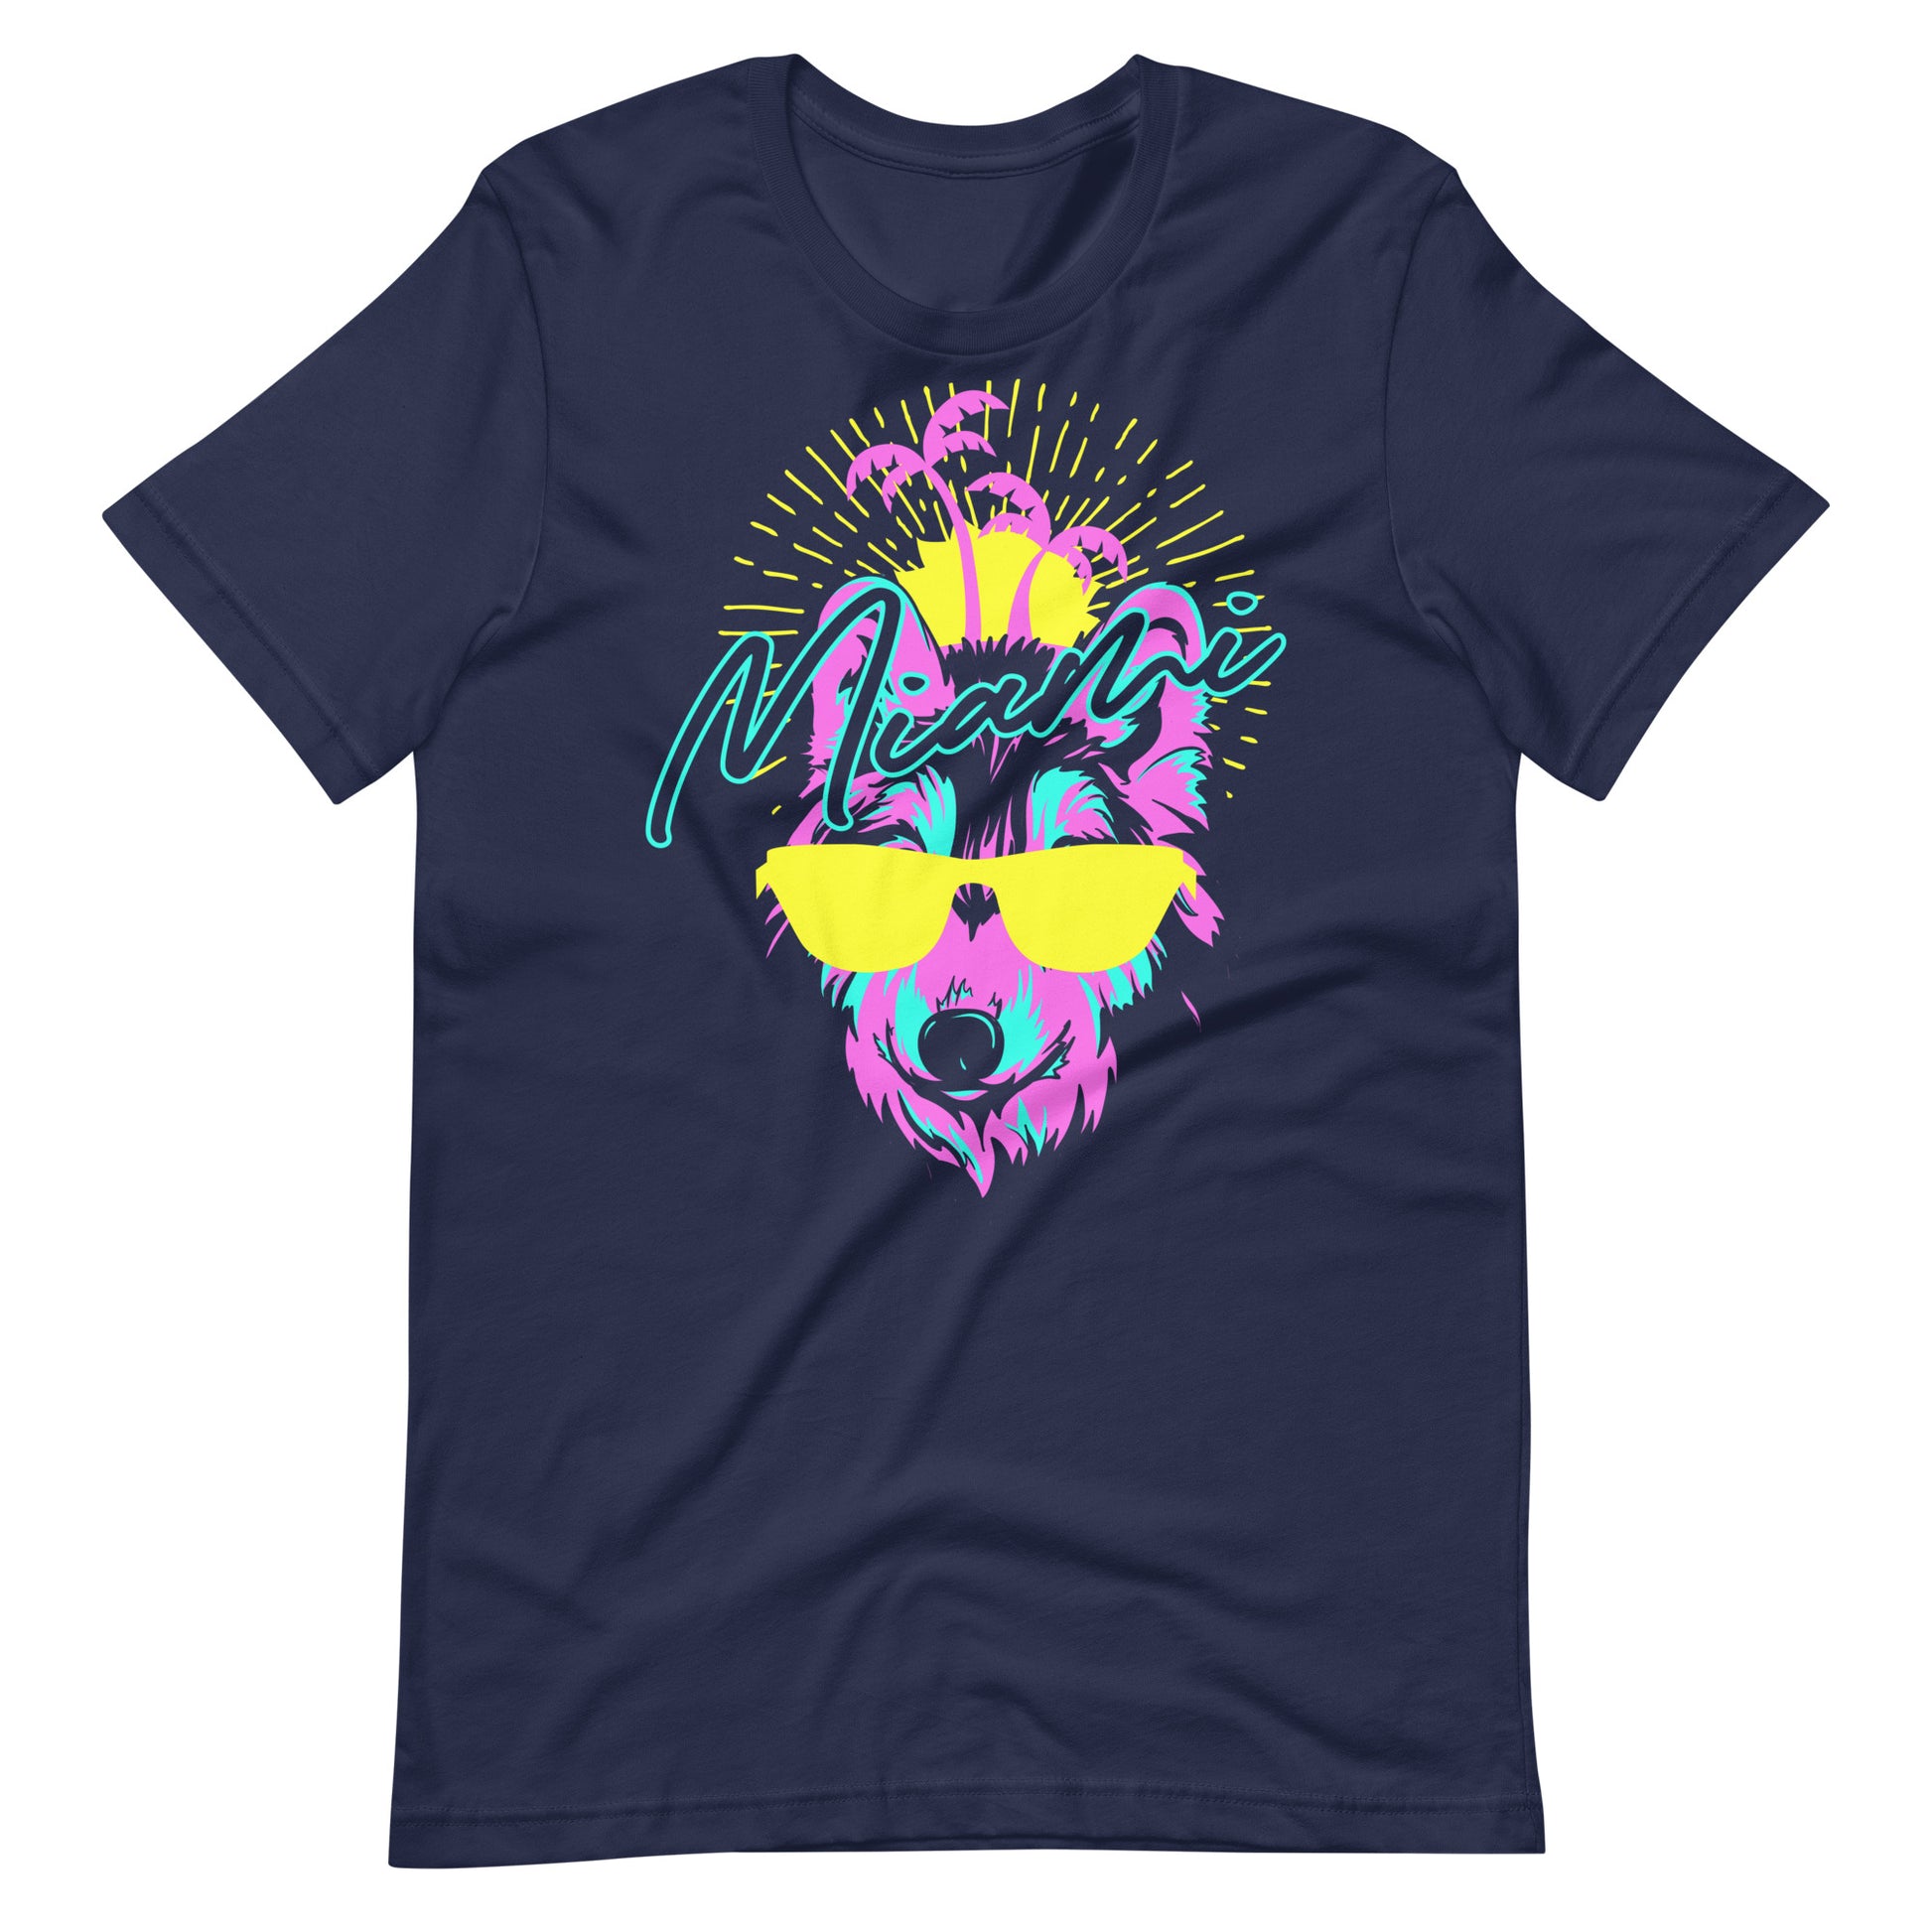 Printagon - Miami Wolf - Unisex T-shirt - Navy / XS